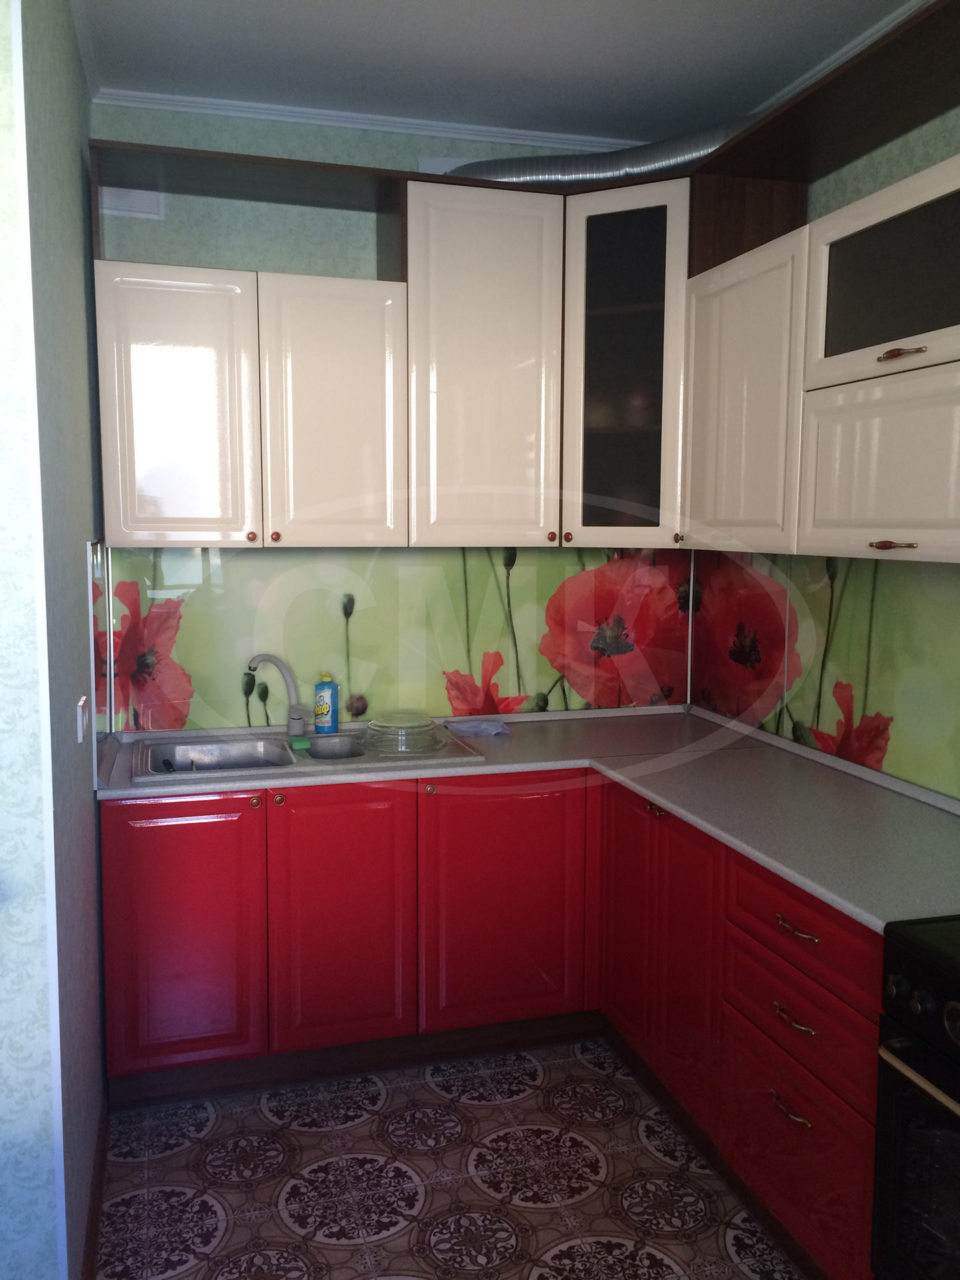 Кухня с фасадами МДФ (цвет верх белый, низ - красный), столешница пластик.